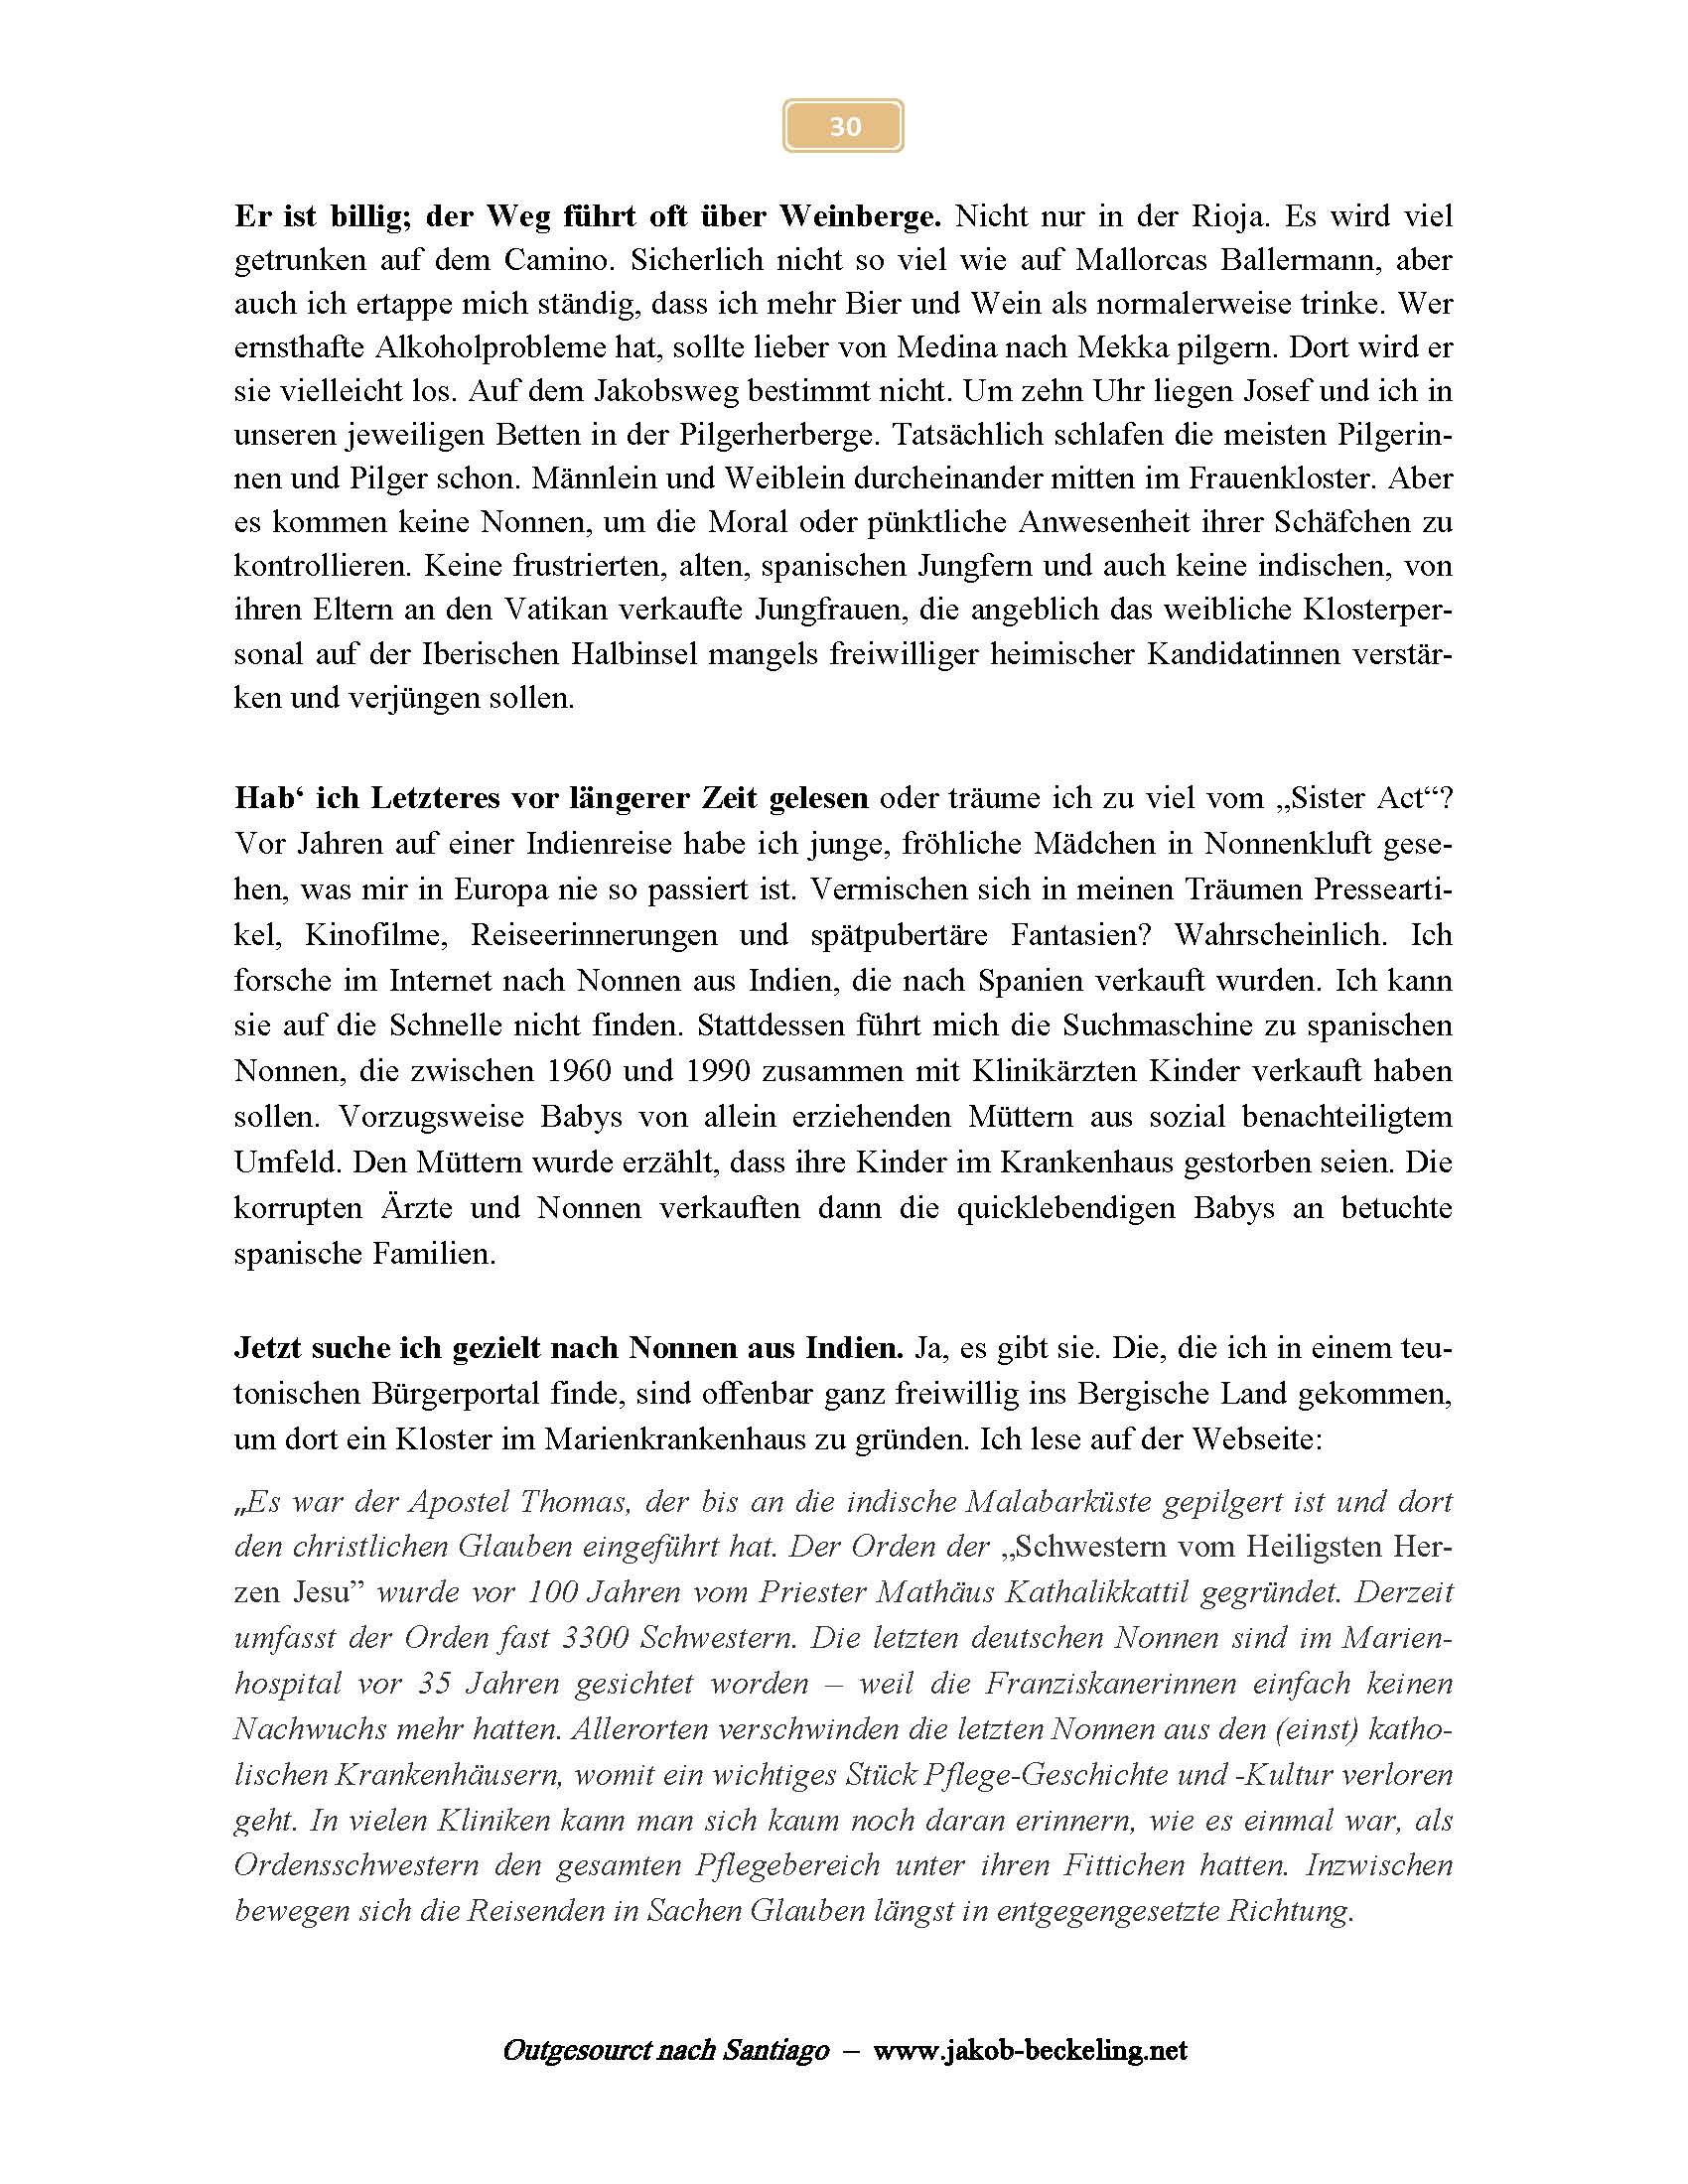 Der Apostel Thomas: Pilger an der indischen Malabarküste. -- 
www.jakob-beckeling.net